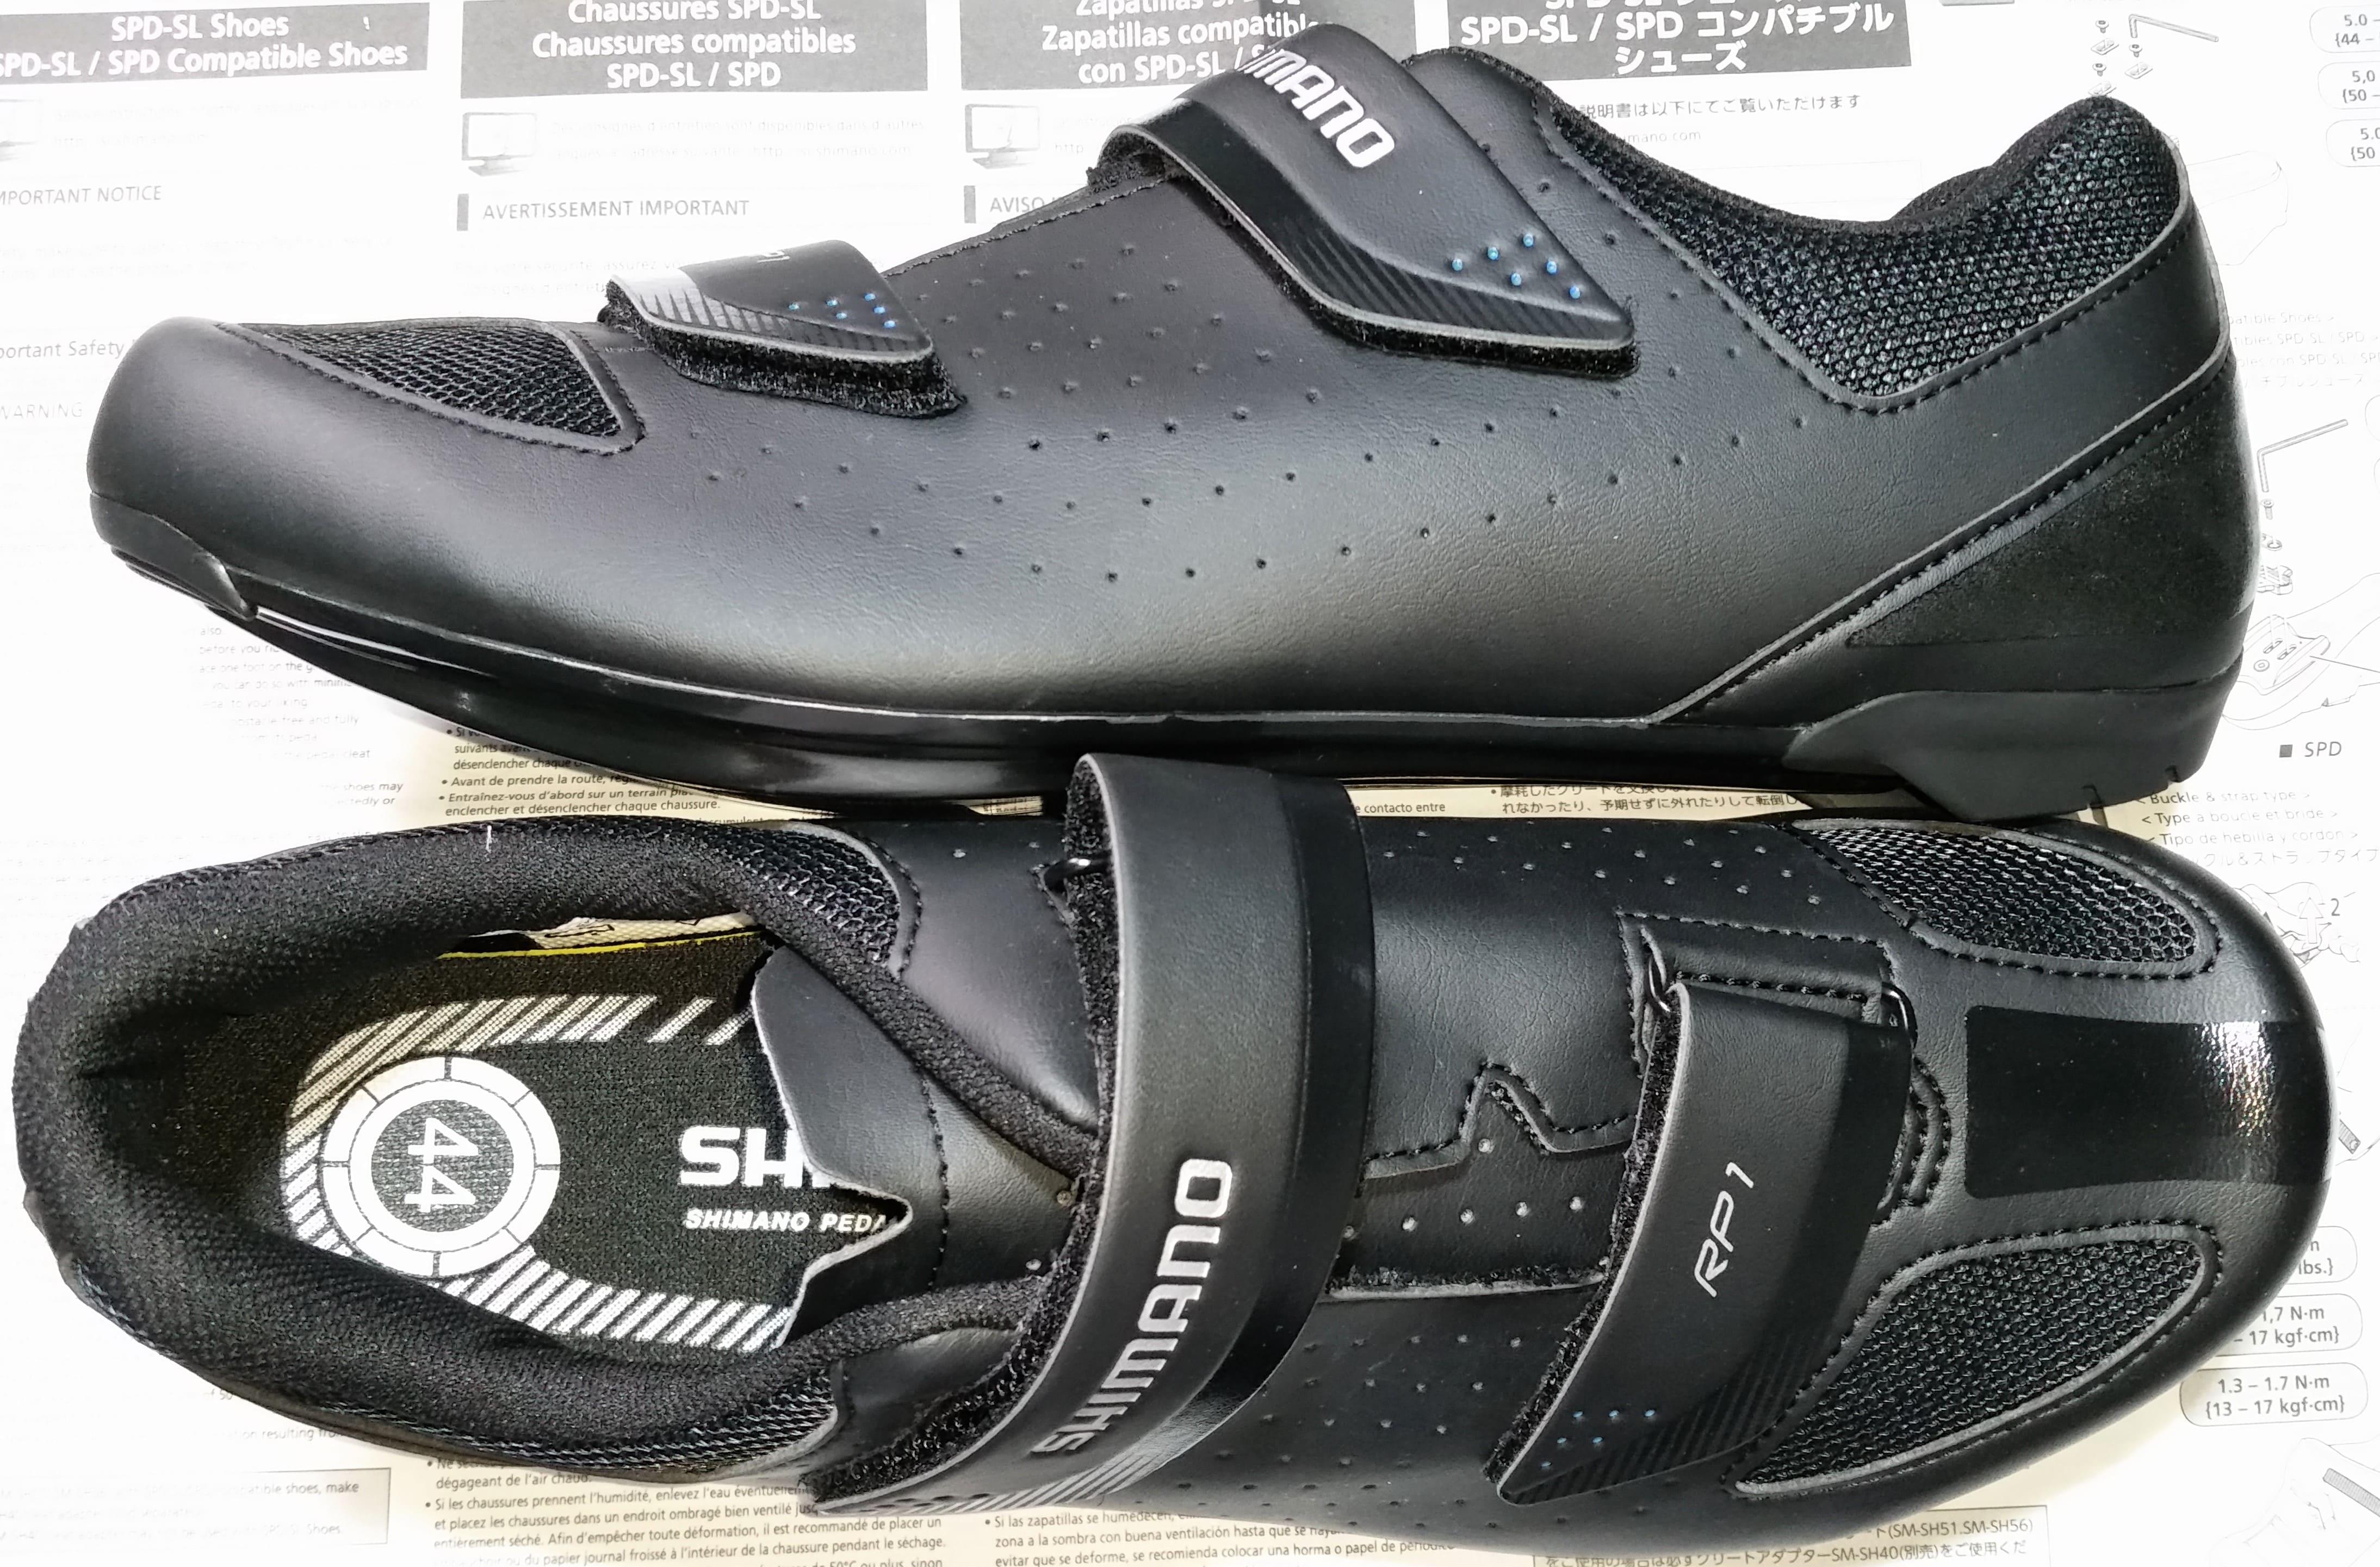 shimano rp1 bike shoes